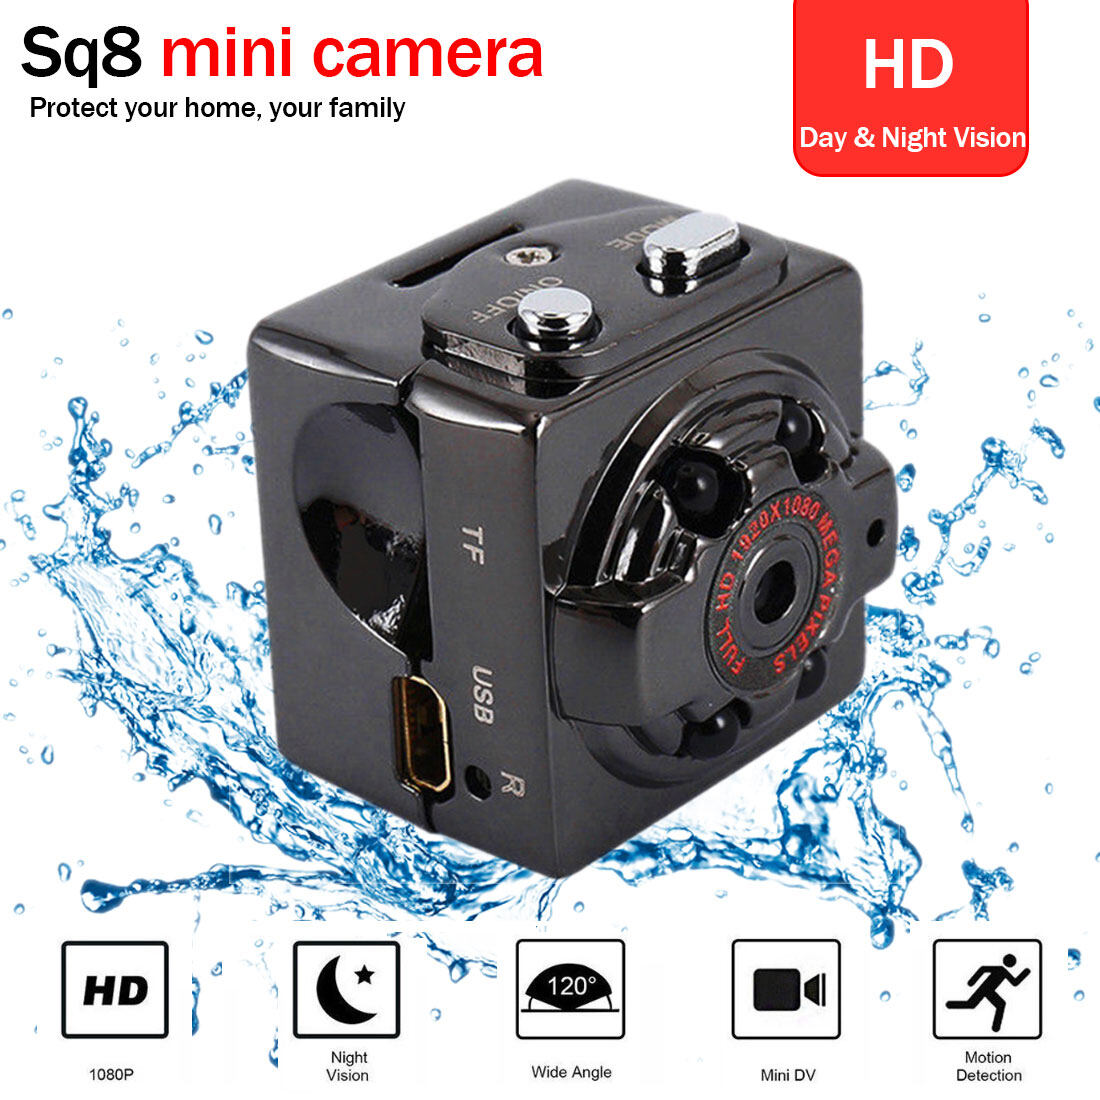 Camera Thông Minh HD Mini SQ8 Camera Không Dây Chế Độ Ghi Hình Kép 1080P 720P Camera Quan Sát Ban Đêm Camera Mini Siêu Nhỏ DVR